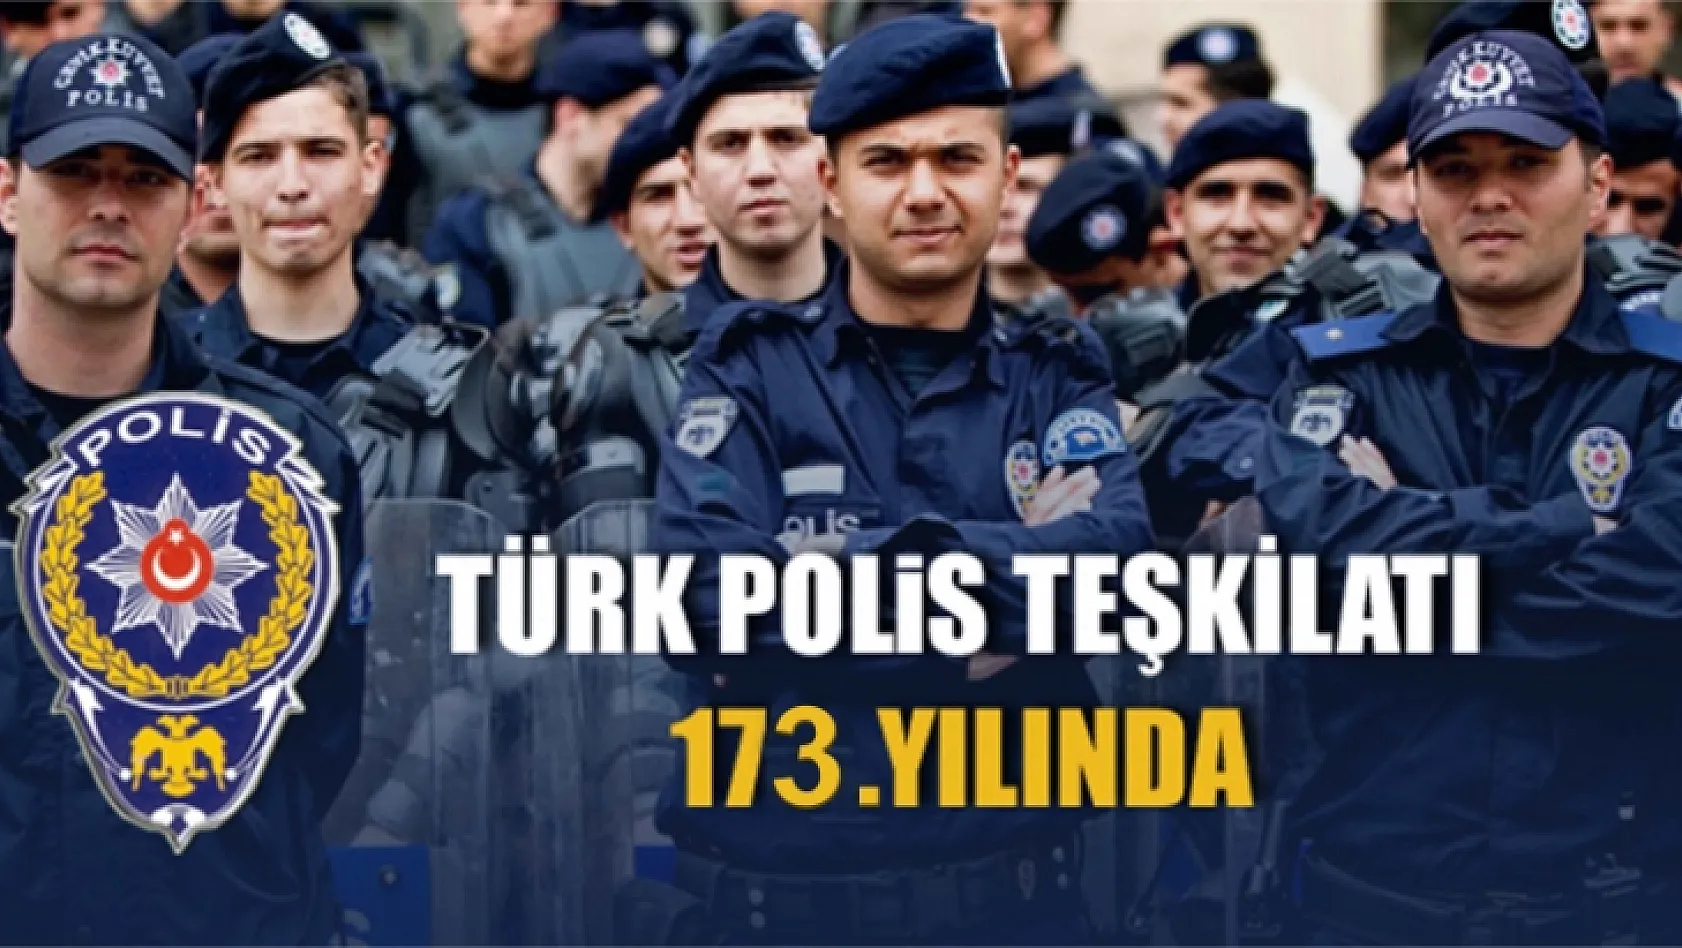 Vali Kaldırım, Polis Teşkilatının Gününü Kutladı